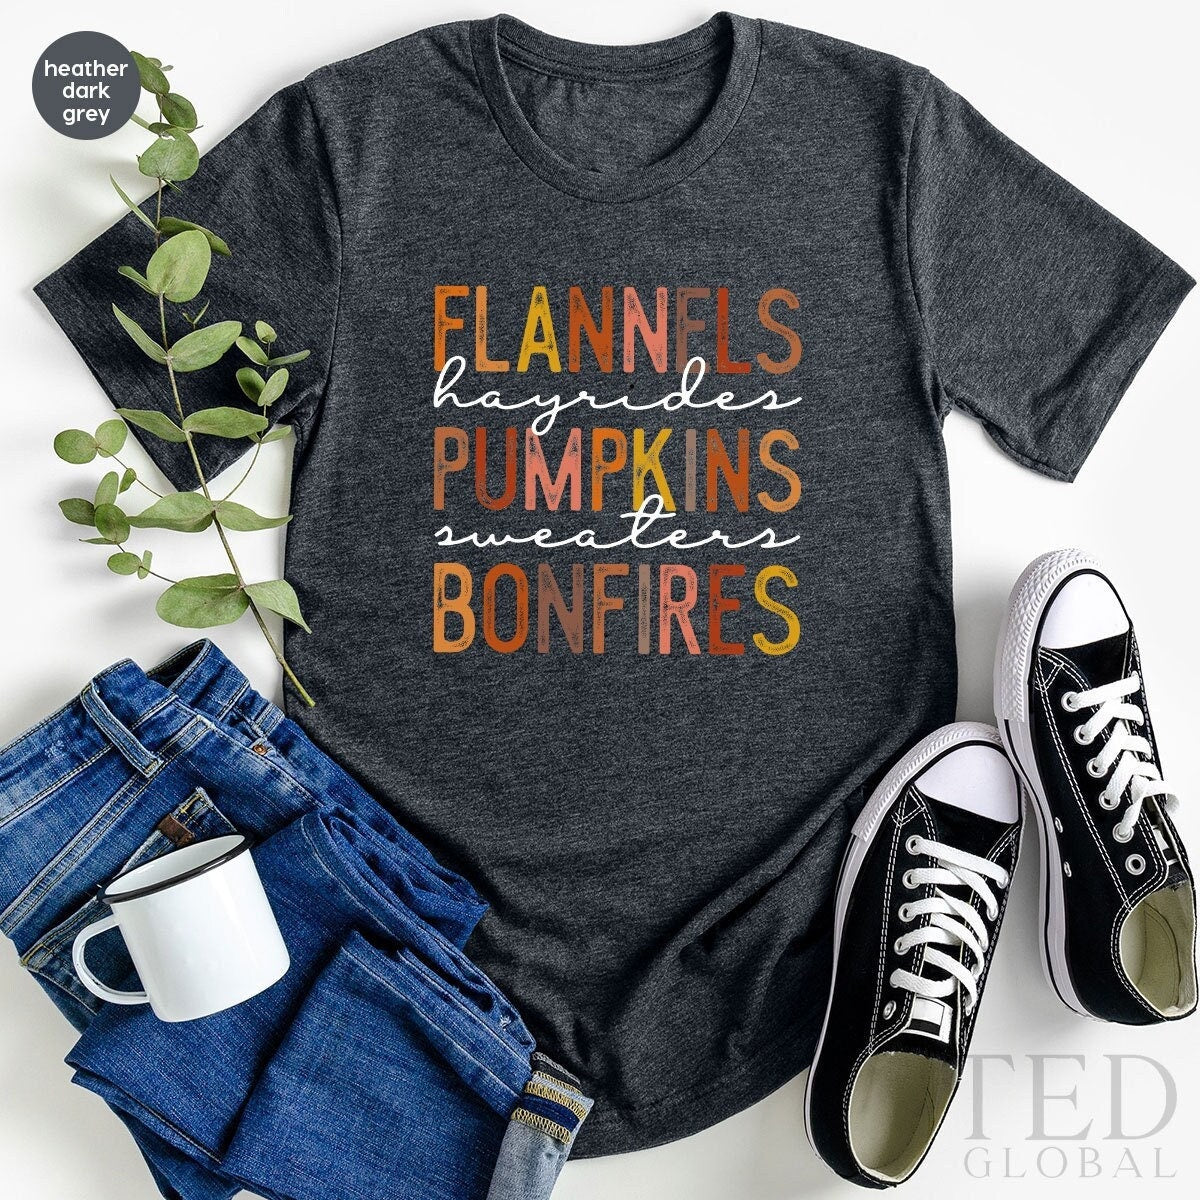 Thanksgiving Shirt, Pumpkin Spice Season T Shirt, Cute Fall T Shirt, Autumn Flannels Shirts, Fall Lover Tee, Bonfires T-Shirt, Gift For Her - Fastdeliverytees.com